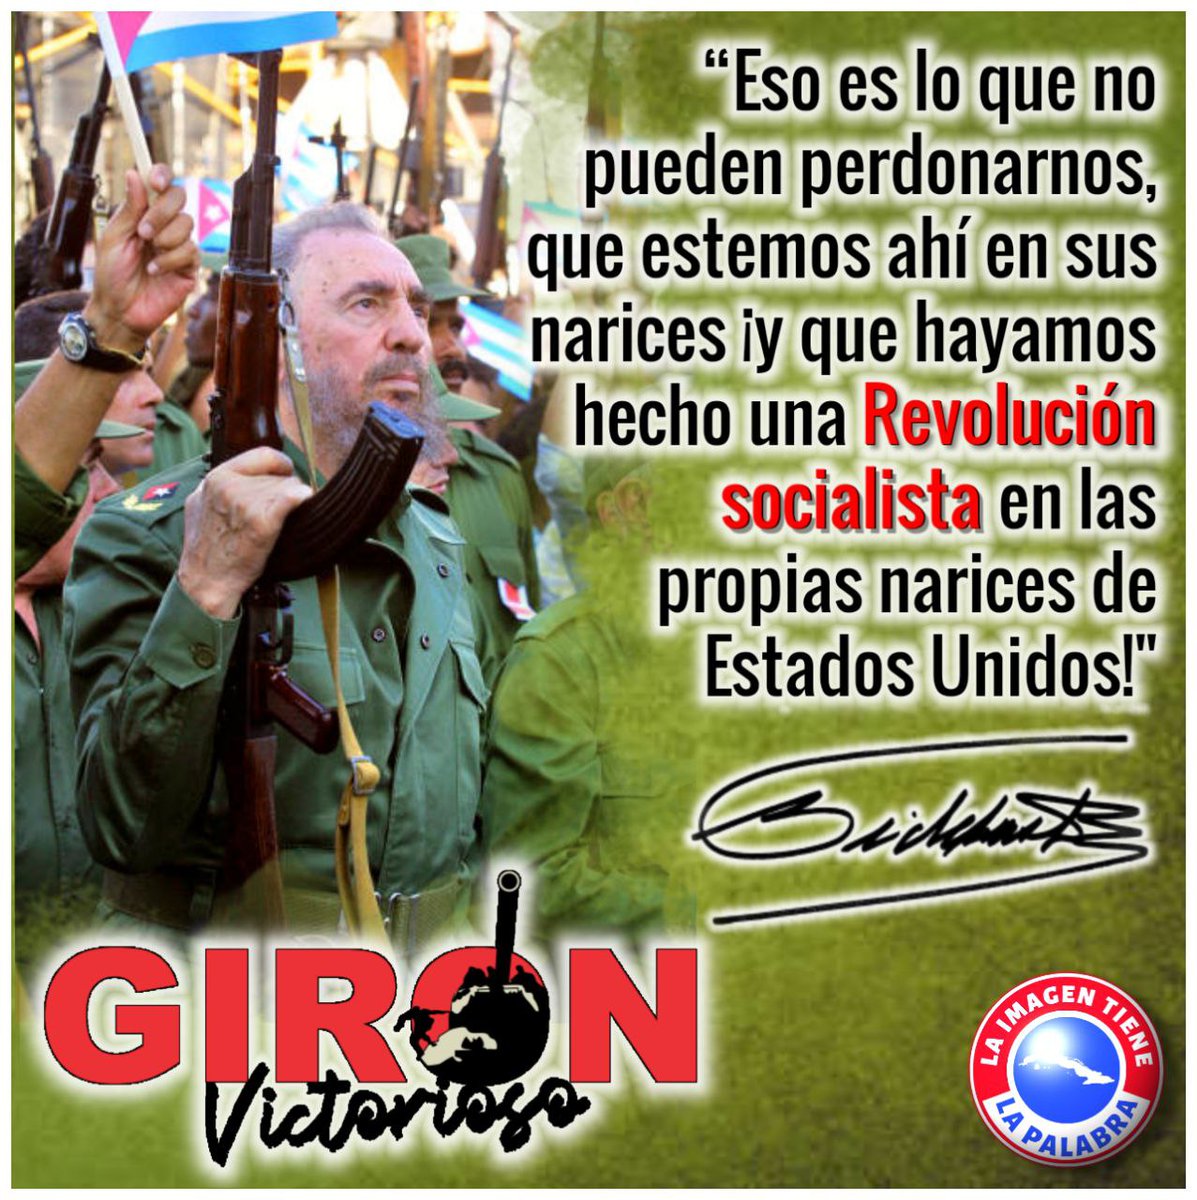 El 16 de abril de 1961 se proclamó el carácter socialista de la Revolución. El pueblo tomó las armas para defender su Patria ante la invasión mercenaria. #GironVictorioso